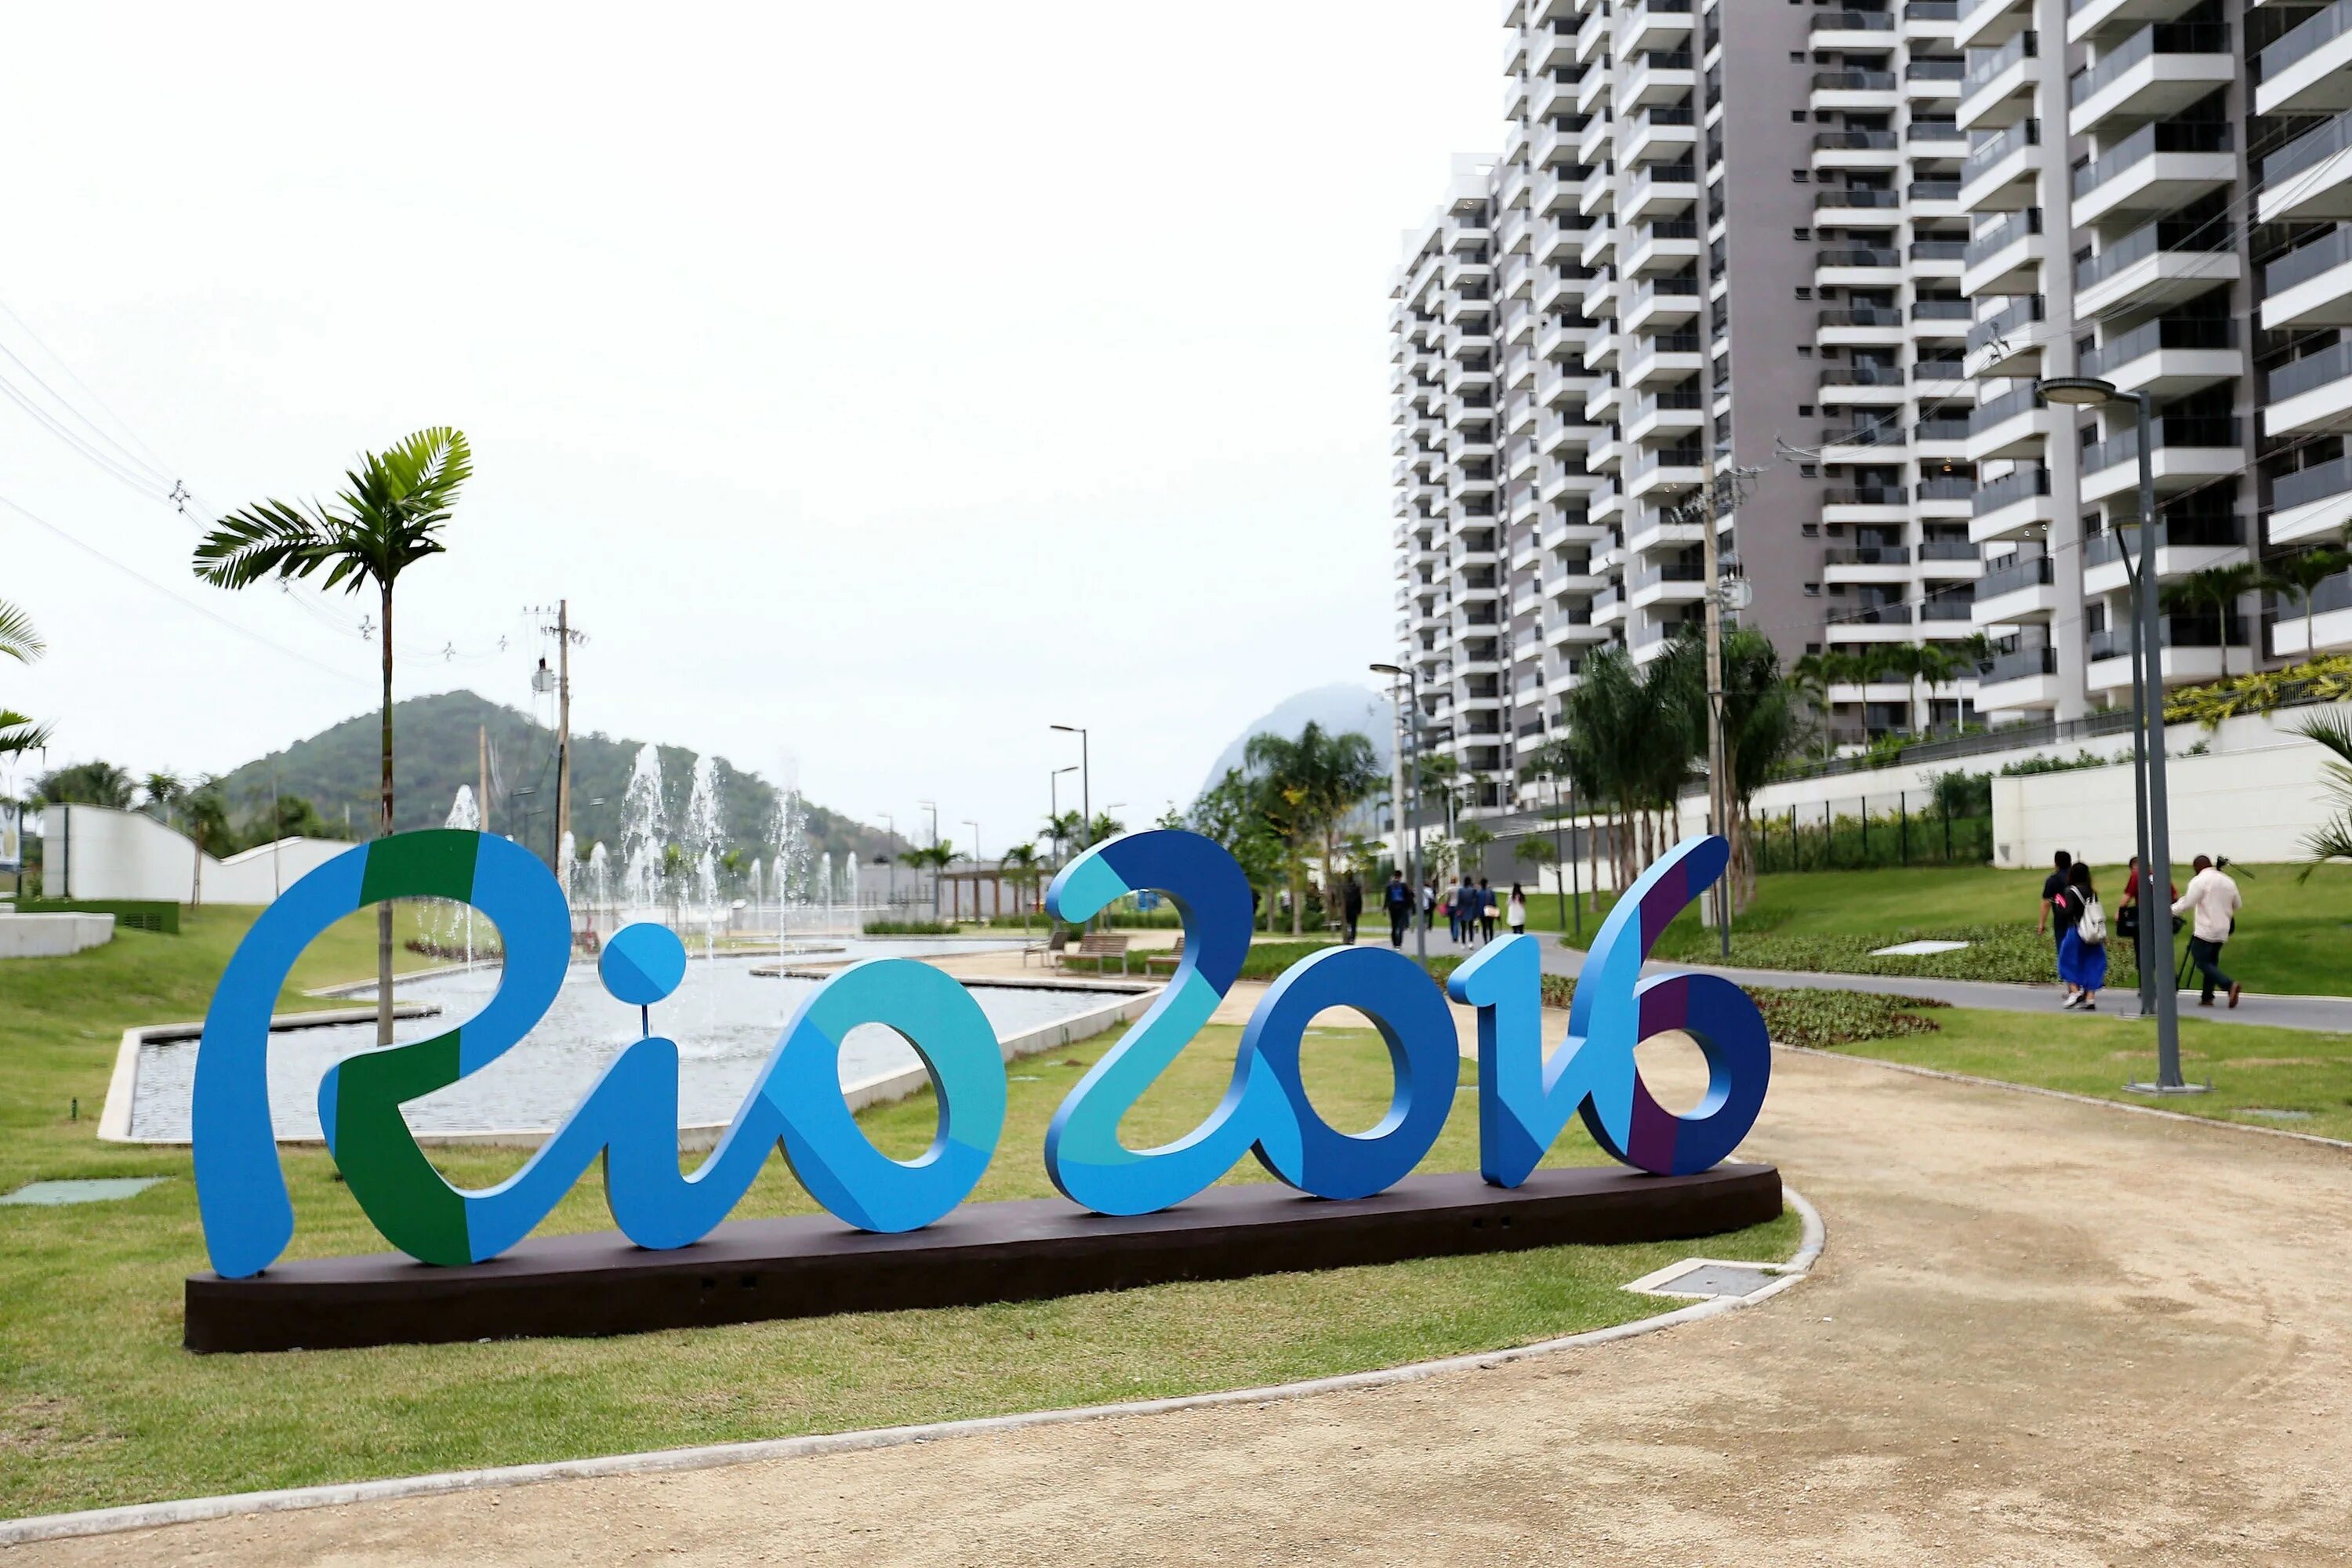 Села рио. Олимпийская деревня Рио 2016. Олимпийский парк в Рио де Жанейро. Вывеска Олимпийская деревня. Русский дом в Рио 2016.